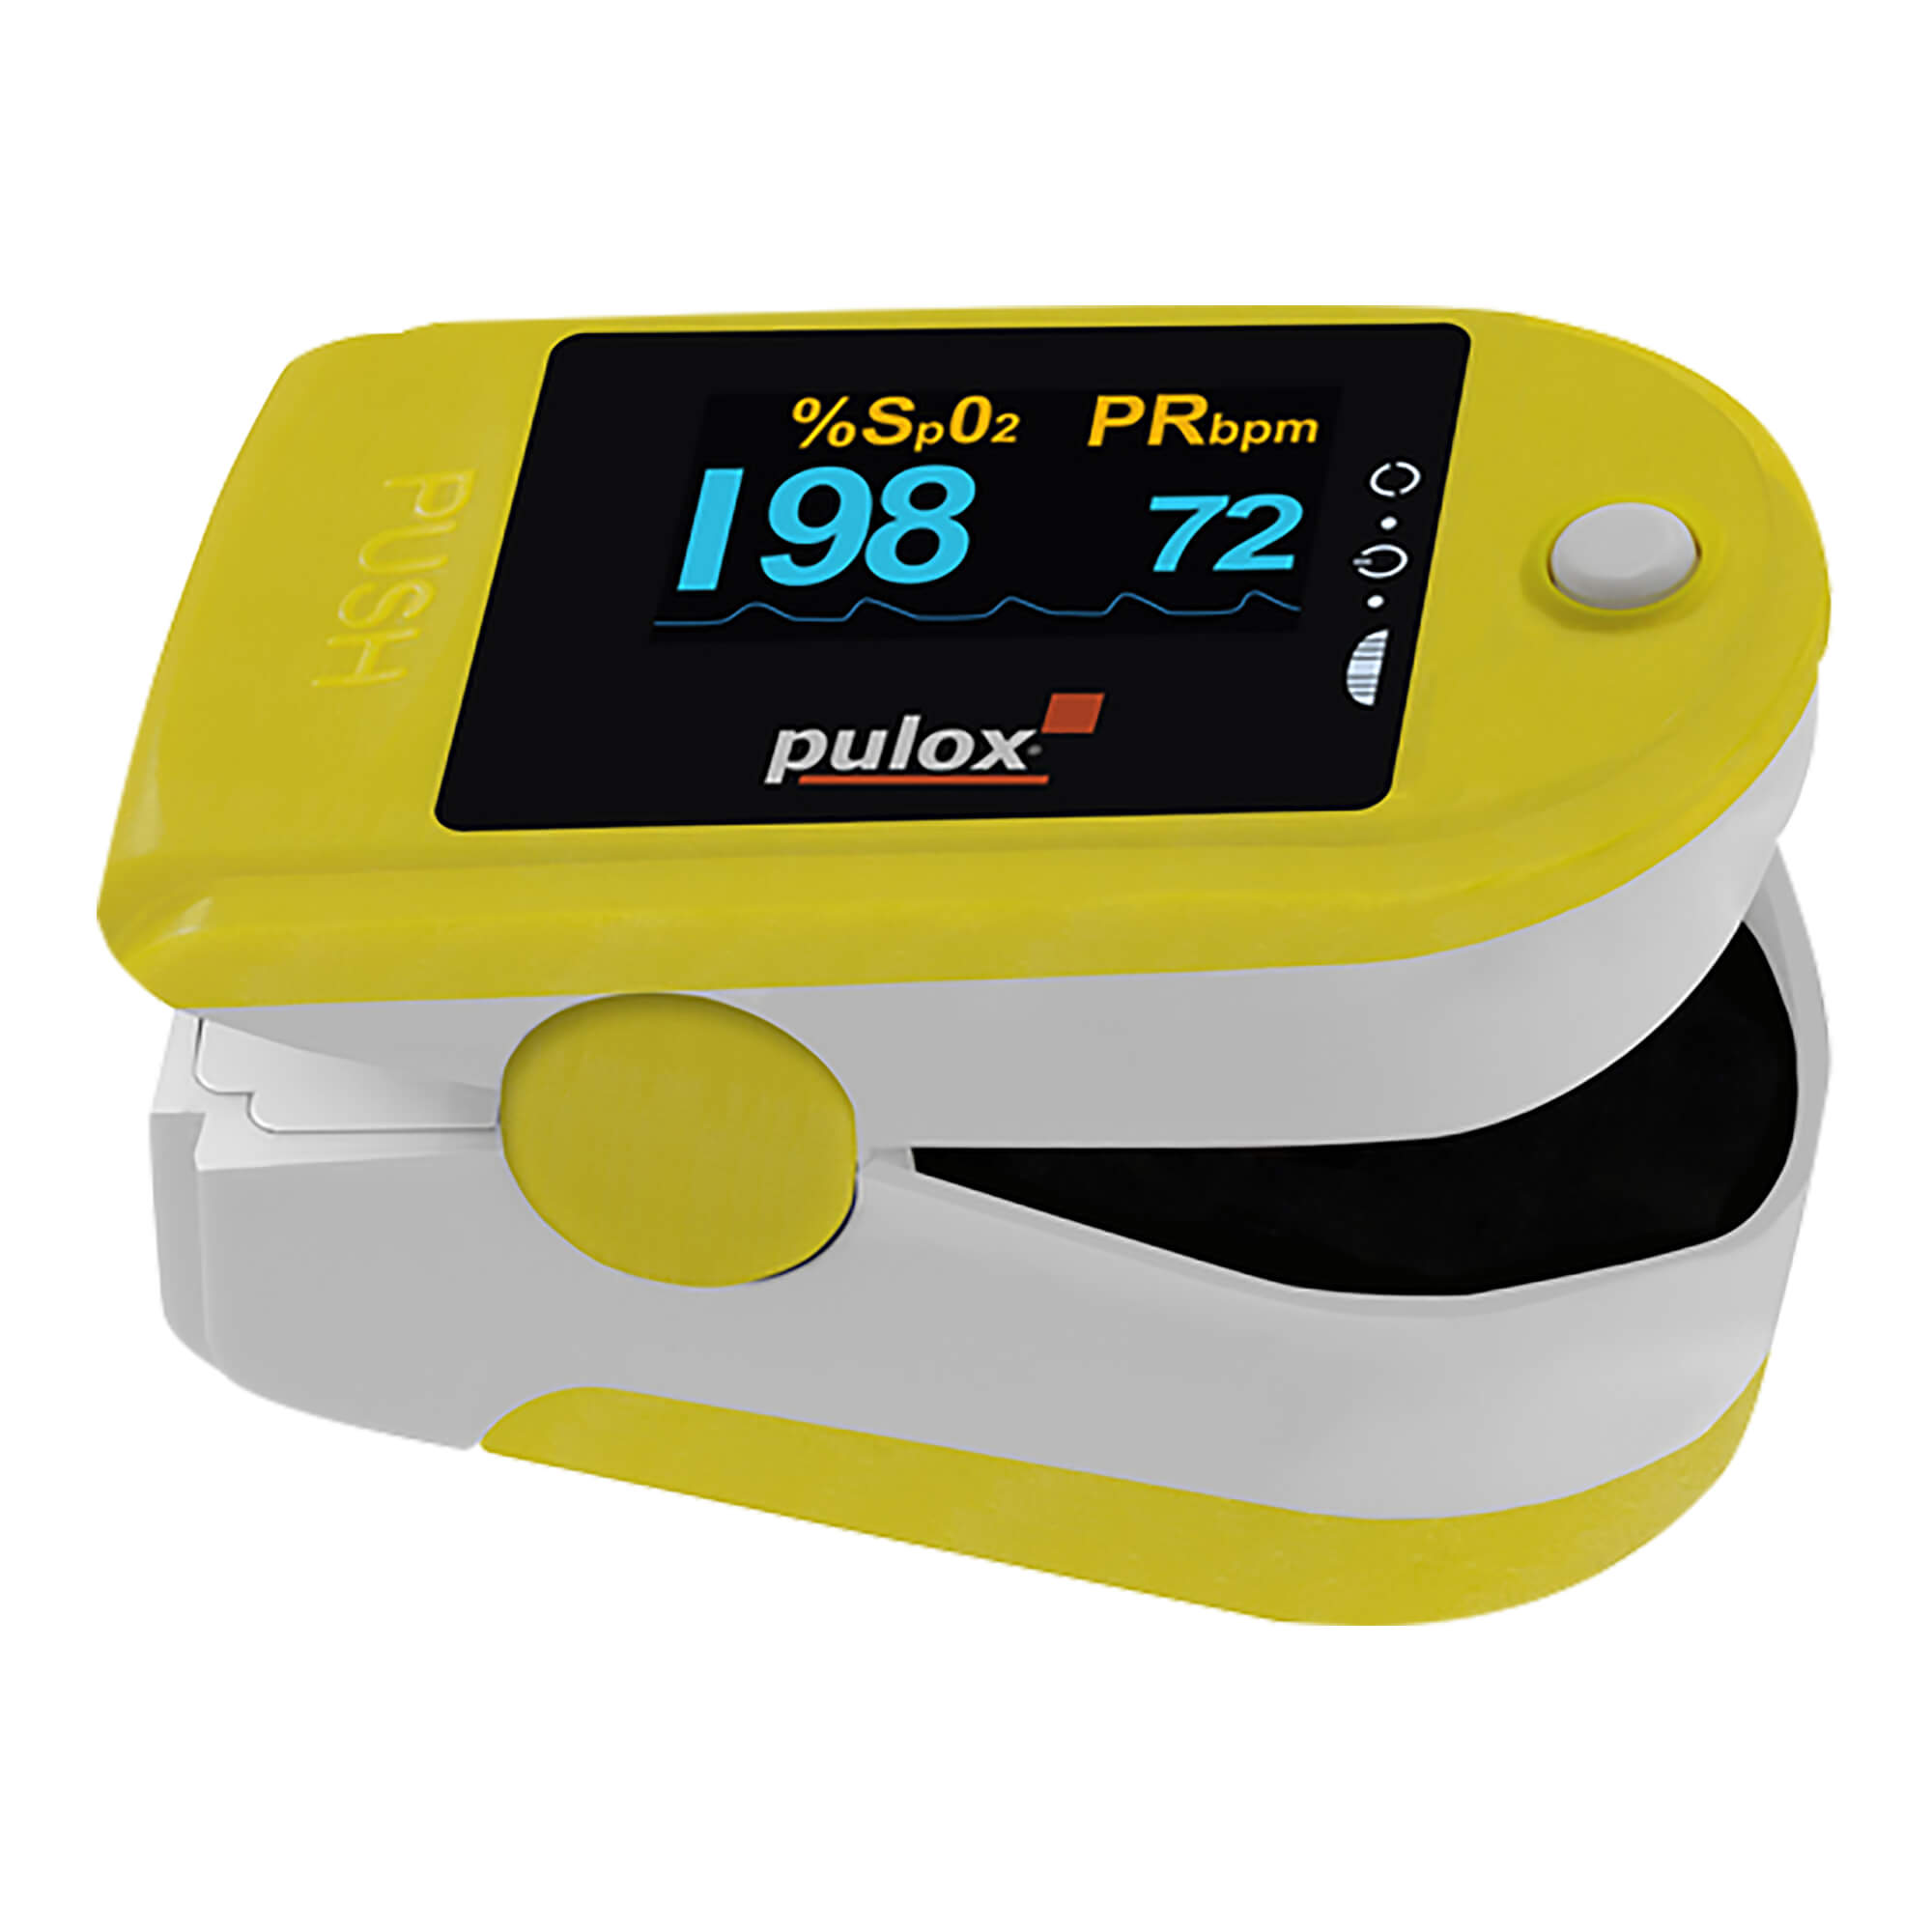 Finger-Pulsoximeter. Mit zweifarbigem OLED-Display, Batterien und Zubehör. Farbe: gelb.